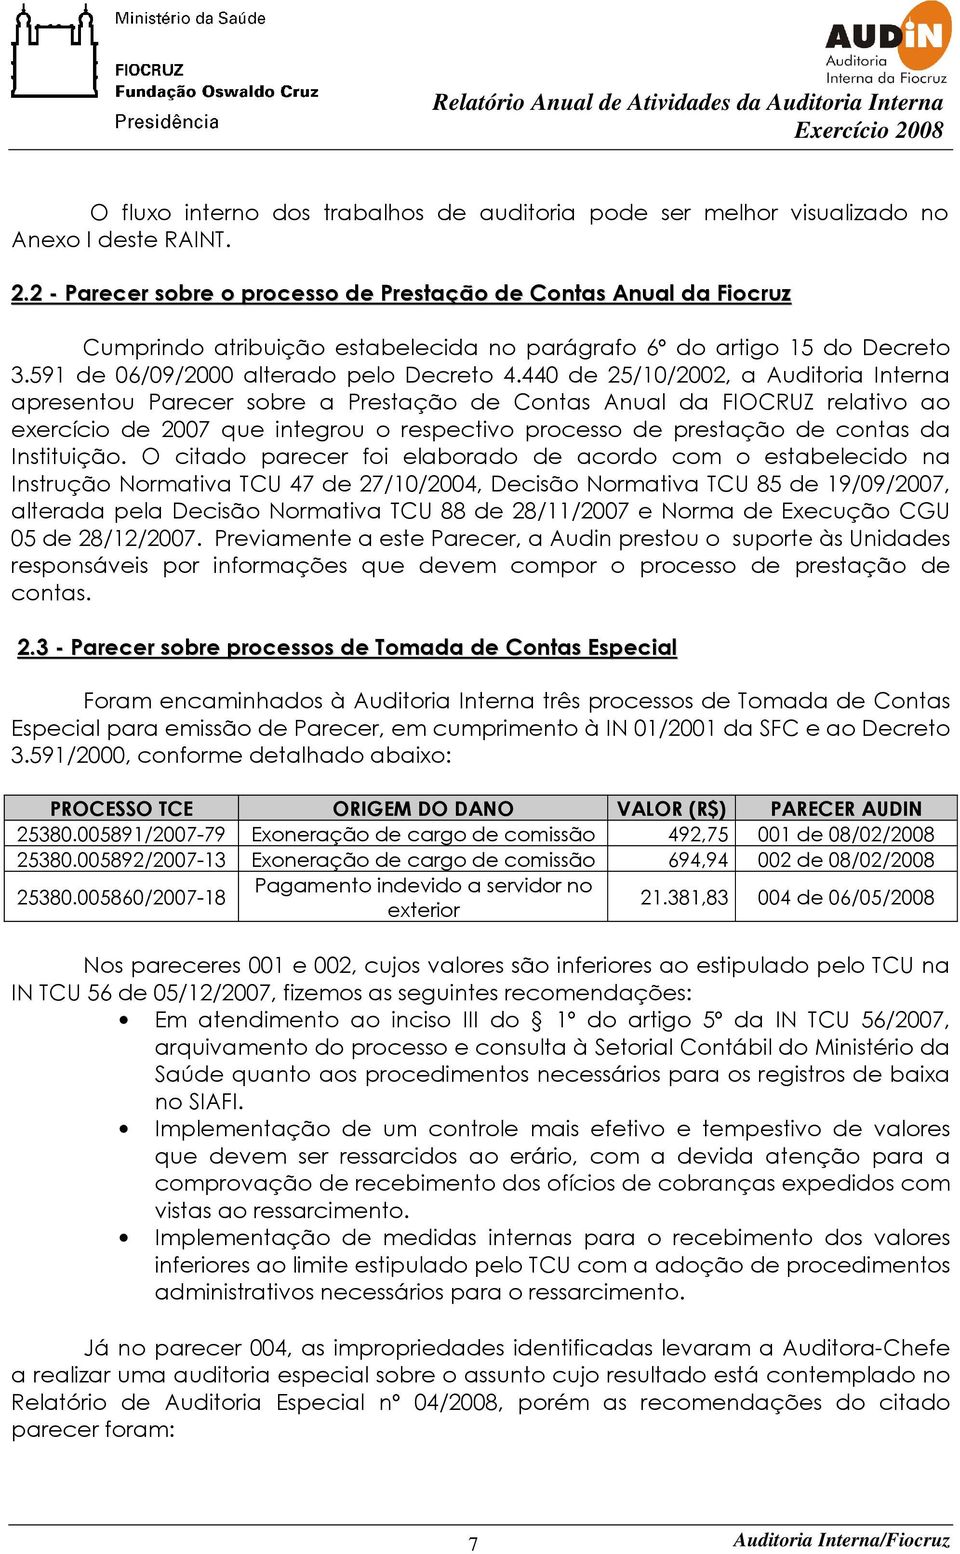 440 de 25/10/2002, a Auditoria Interna apresentou Parecer sobre a Prestação de Contas Anual da FIOCRUZ relativo ao exercício de 2007 que integrou o respectivo processo de prestação de contas da